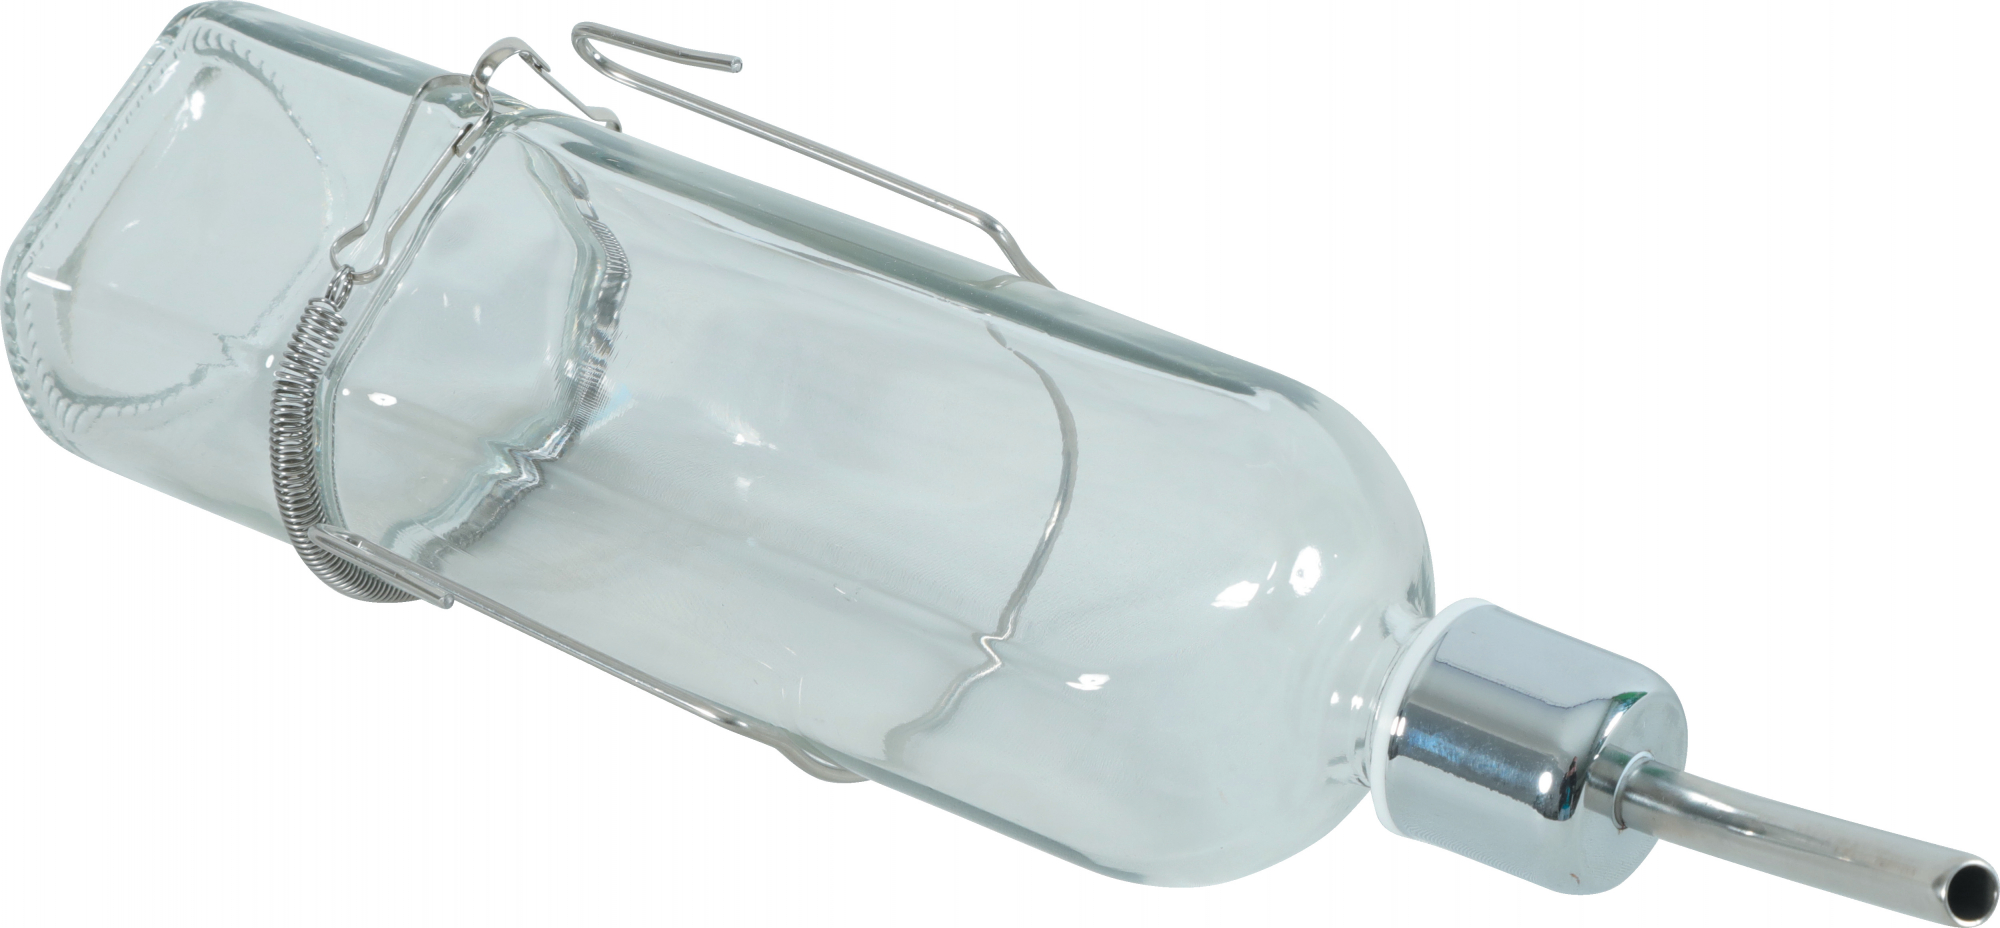 Zolux NEOLIFE Glasflasche für Kleintiere - 2 Größen erhältlich